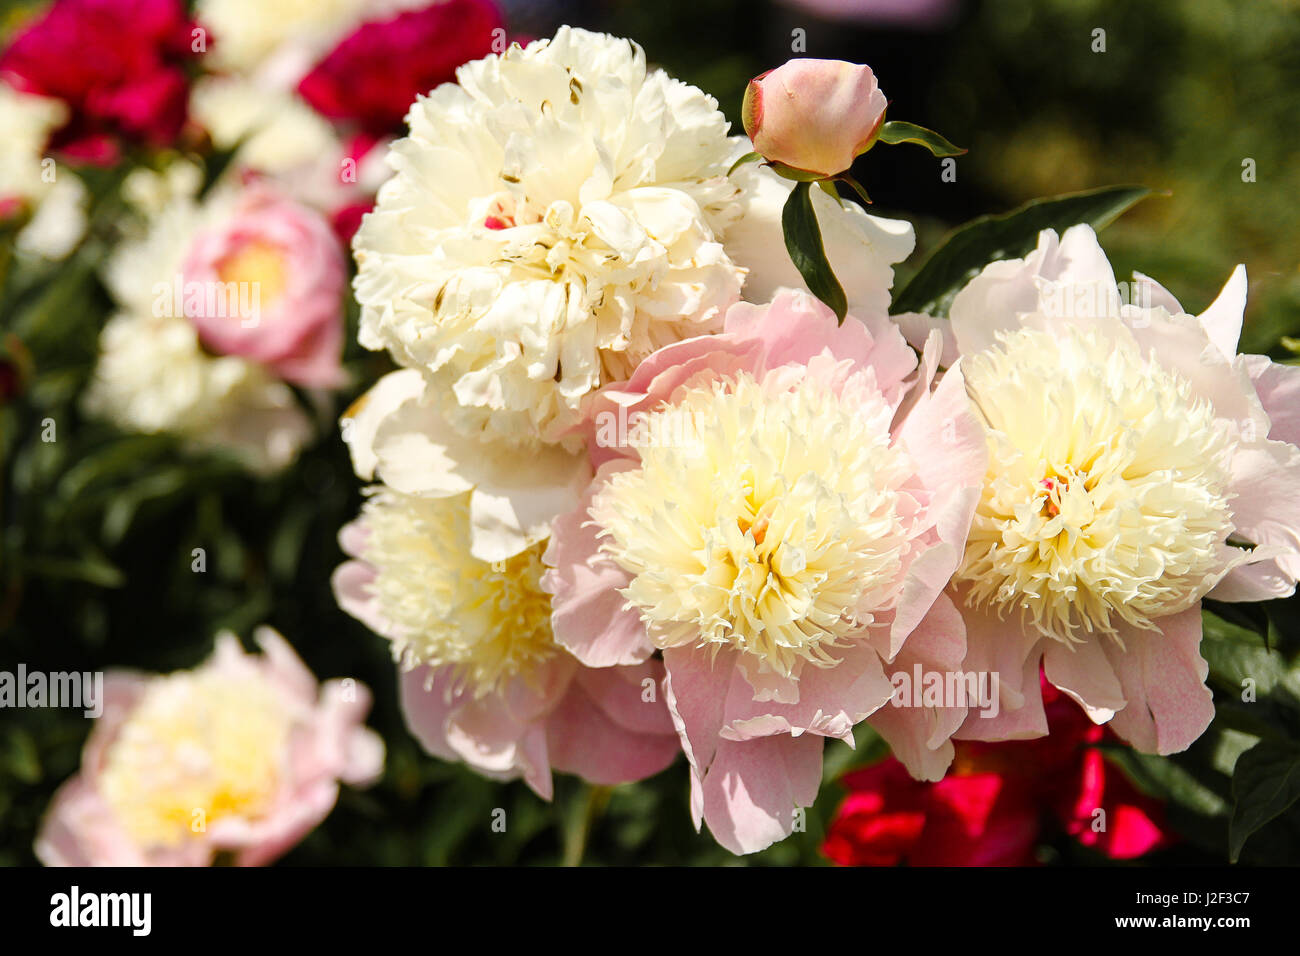 Eony in fiore. Grande rosa pallido peonie con soffici, giallo pallido centri anemone sono belli in un giardino tra rosa scuro blumi. Foto Stock